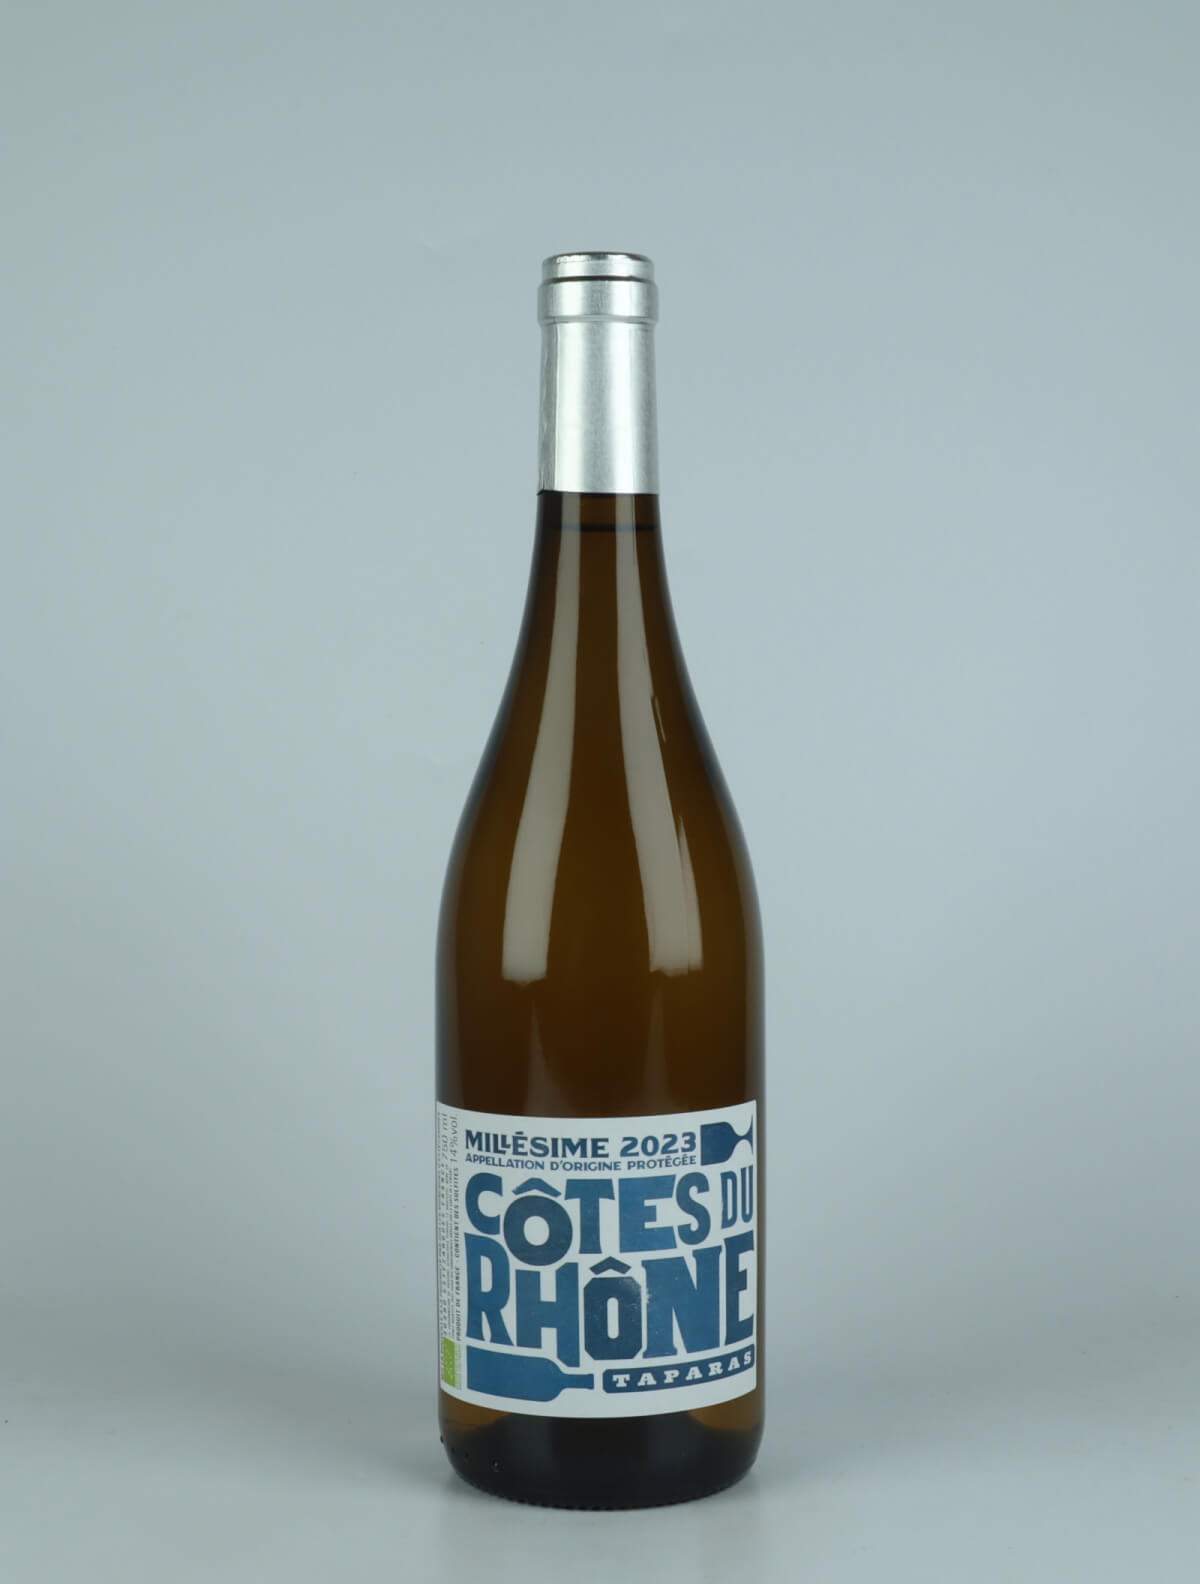 A bottle 2023 Côtes du Rhône Blanc - Taparas White wine from Les Vignerons d’Estézargues, Rhône in France